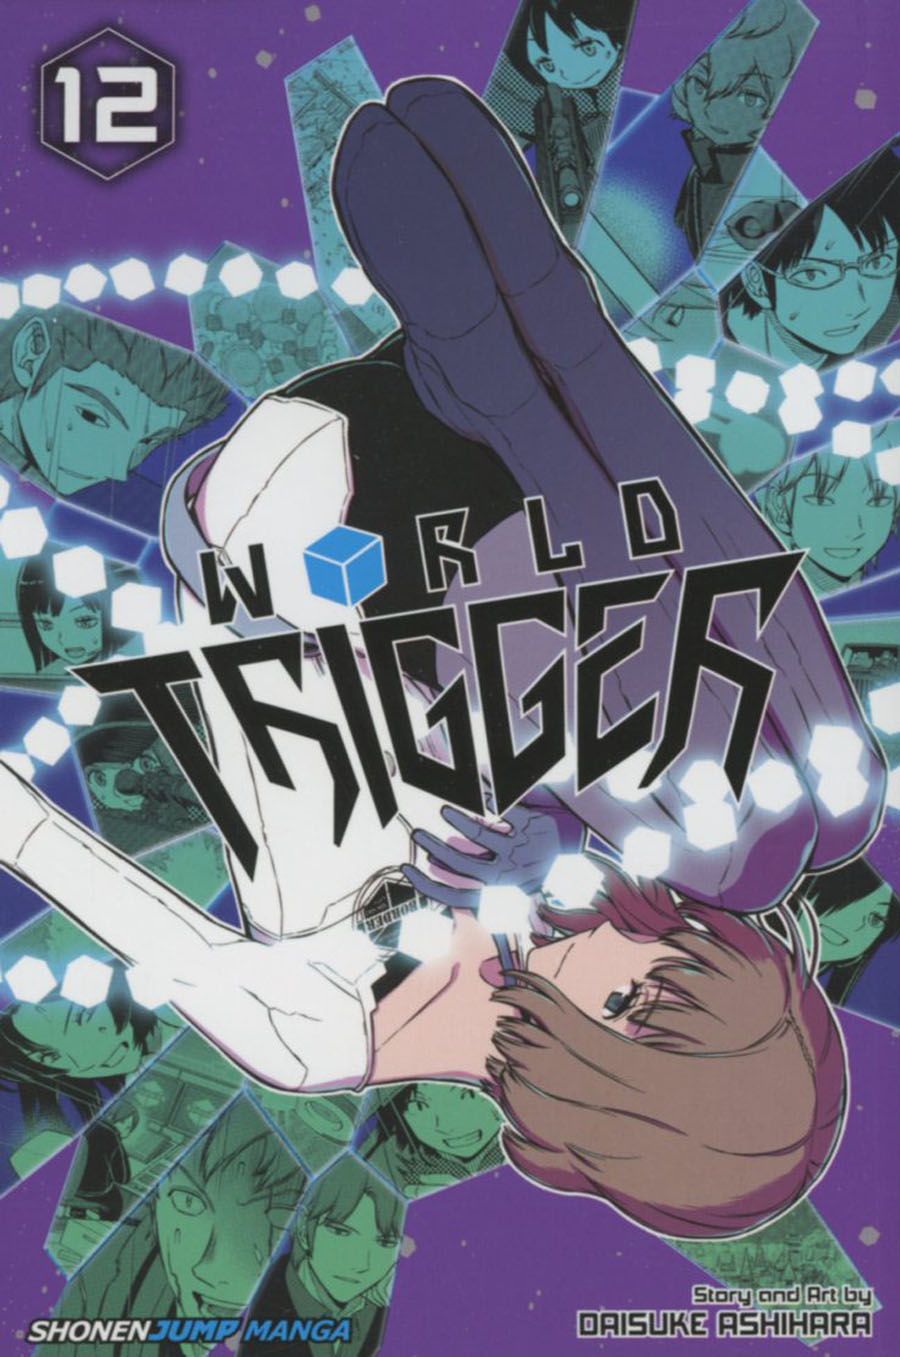 World Trigger Vol 12 TP